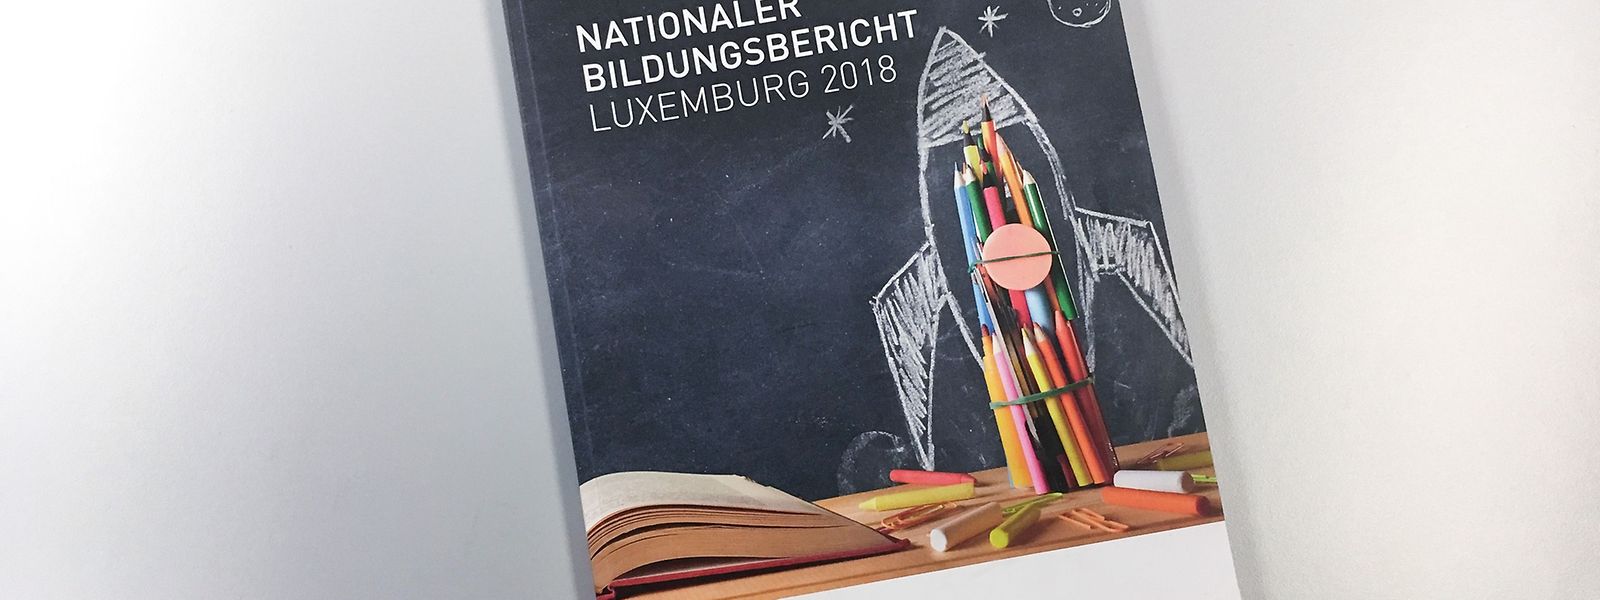 Der aktuelle nationale Bildungsbericht ist der zweite seiner Art. Der erste wurde 2015 veröffentlicht.